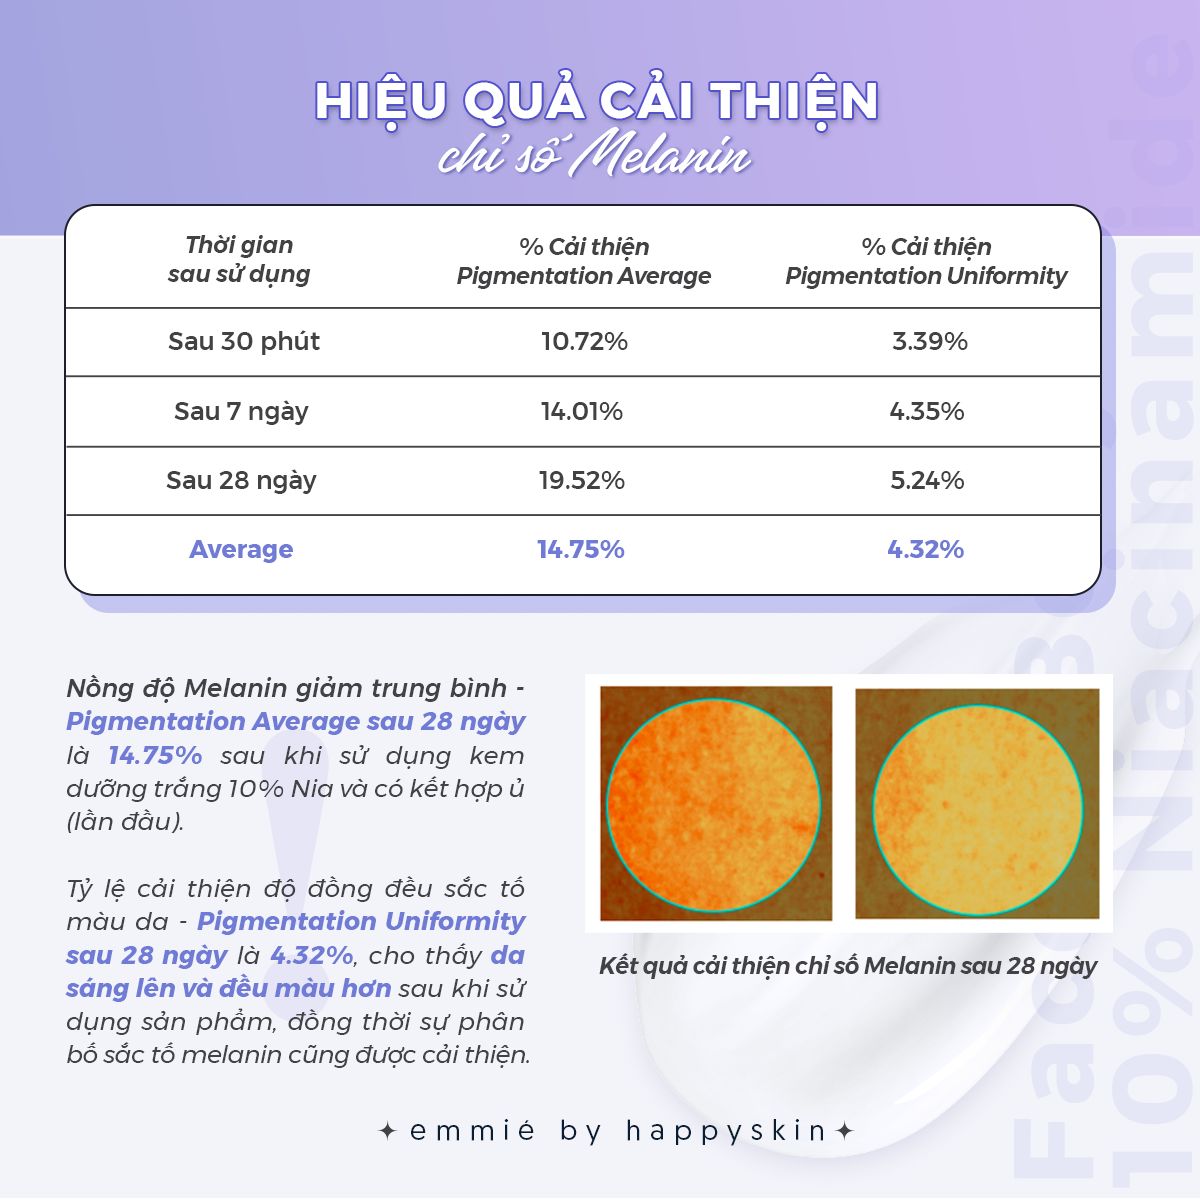 Kem Dưỡng Trắng Emmié Face & Body Emulsion 10% Niacinamide hiệu quả được kiểm chứng